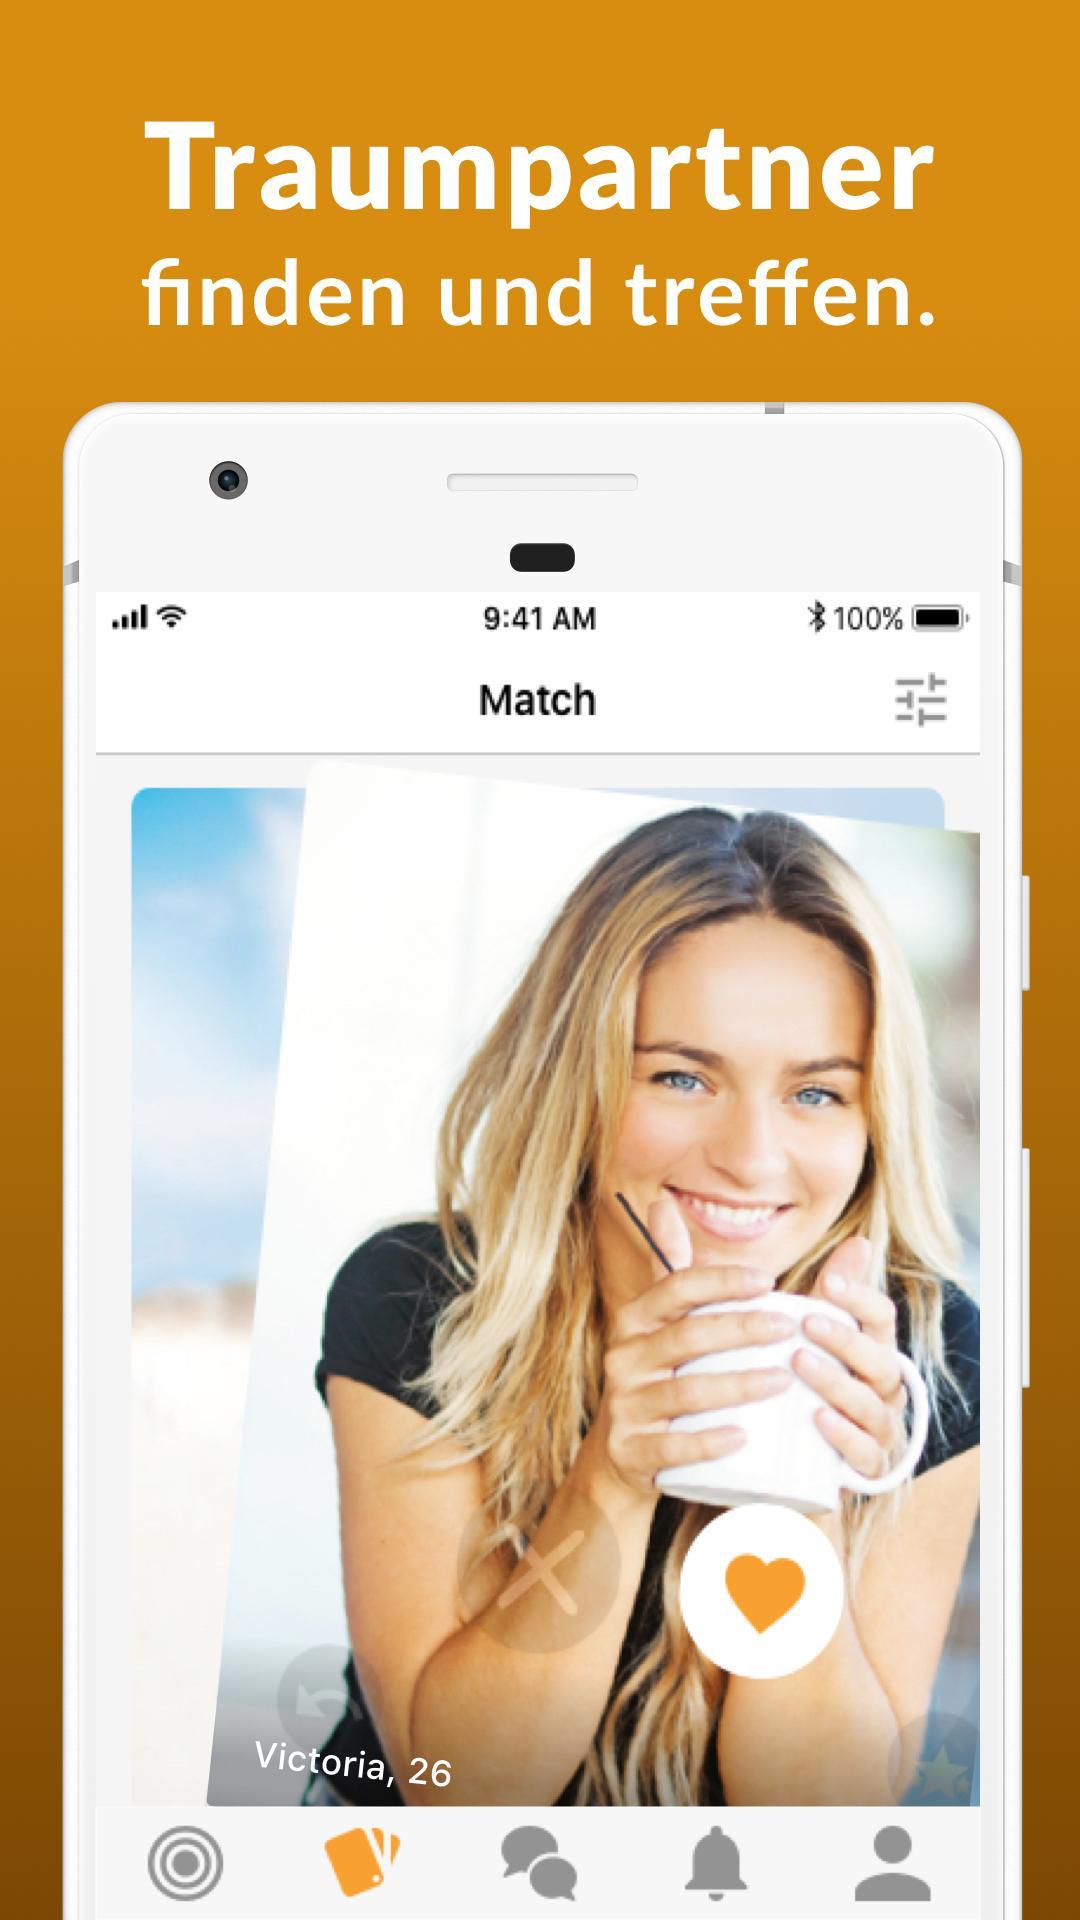 Kostenlose dating-app für 50+